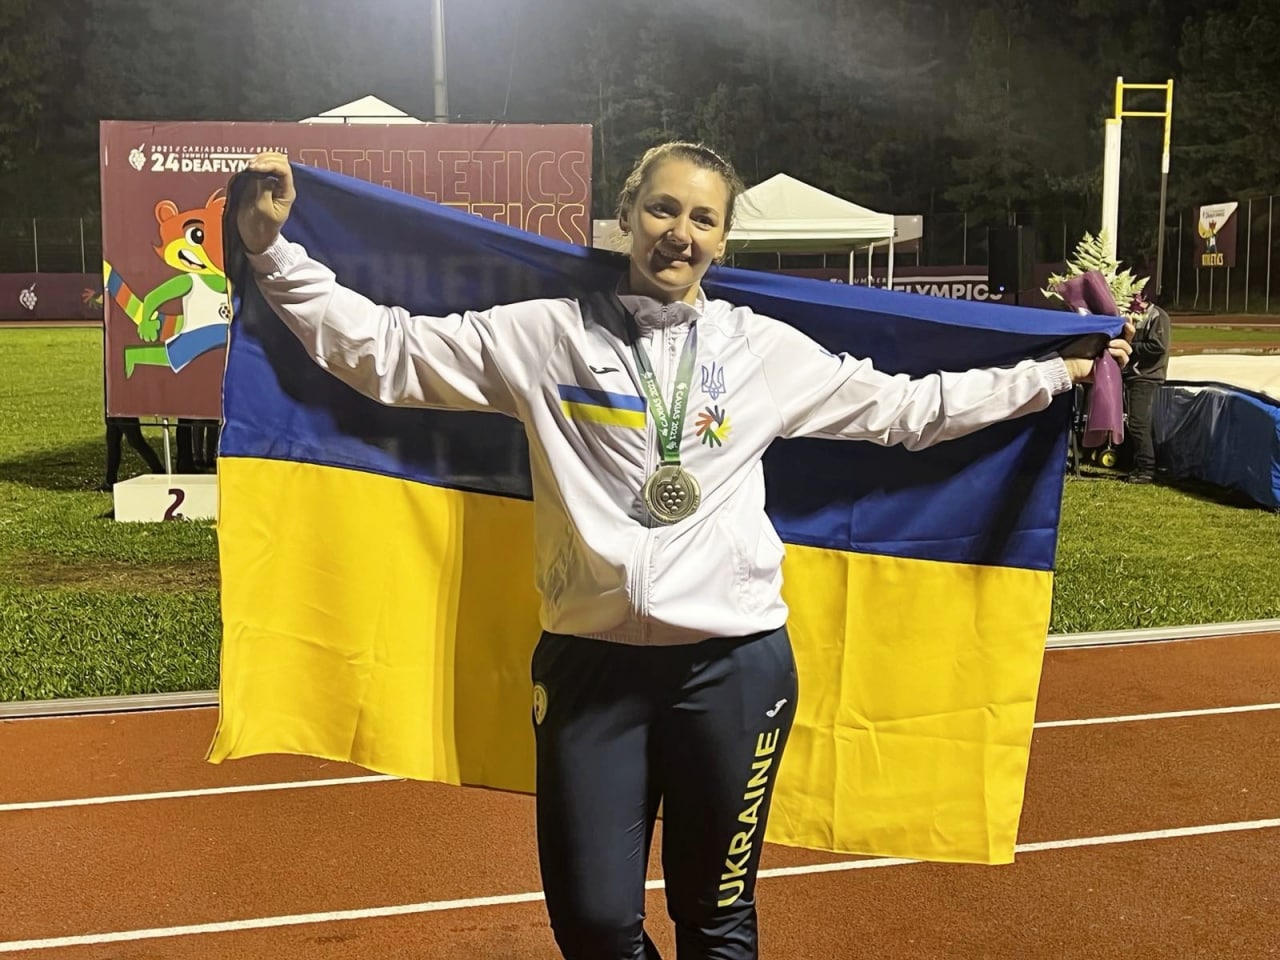 Мариупольские спортсменки завоевали 5 медалей для сборной на Дефлимпийских играх